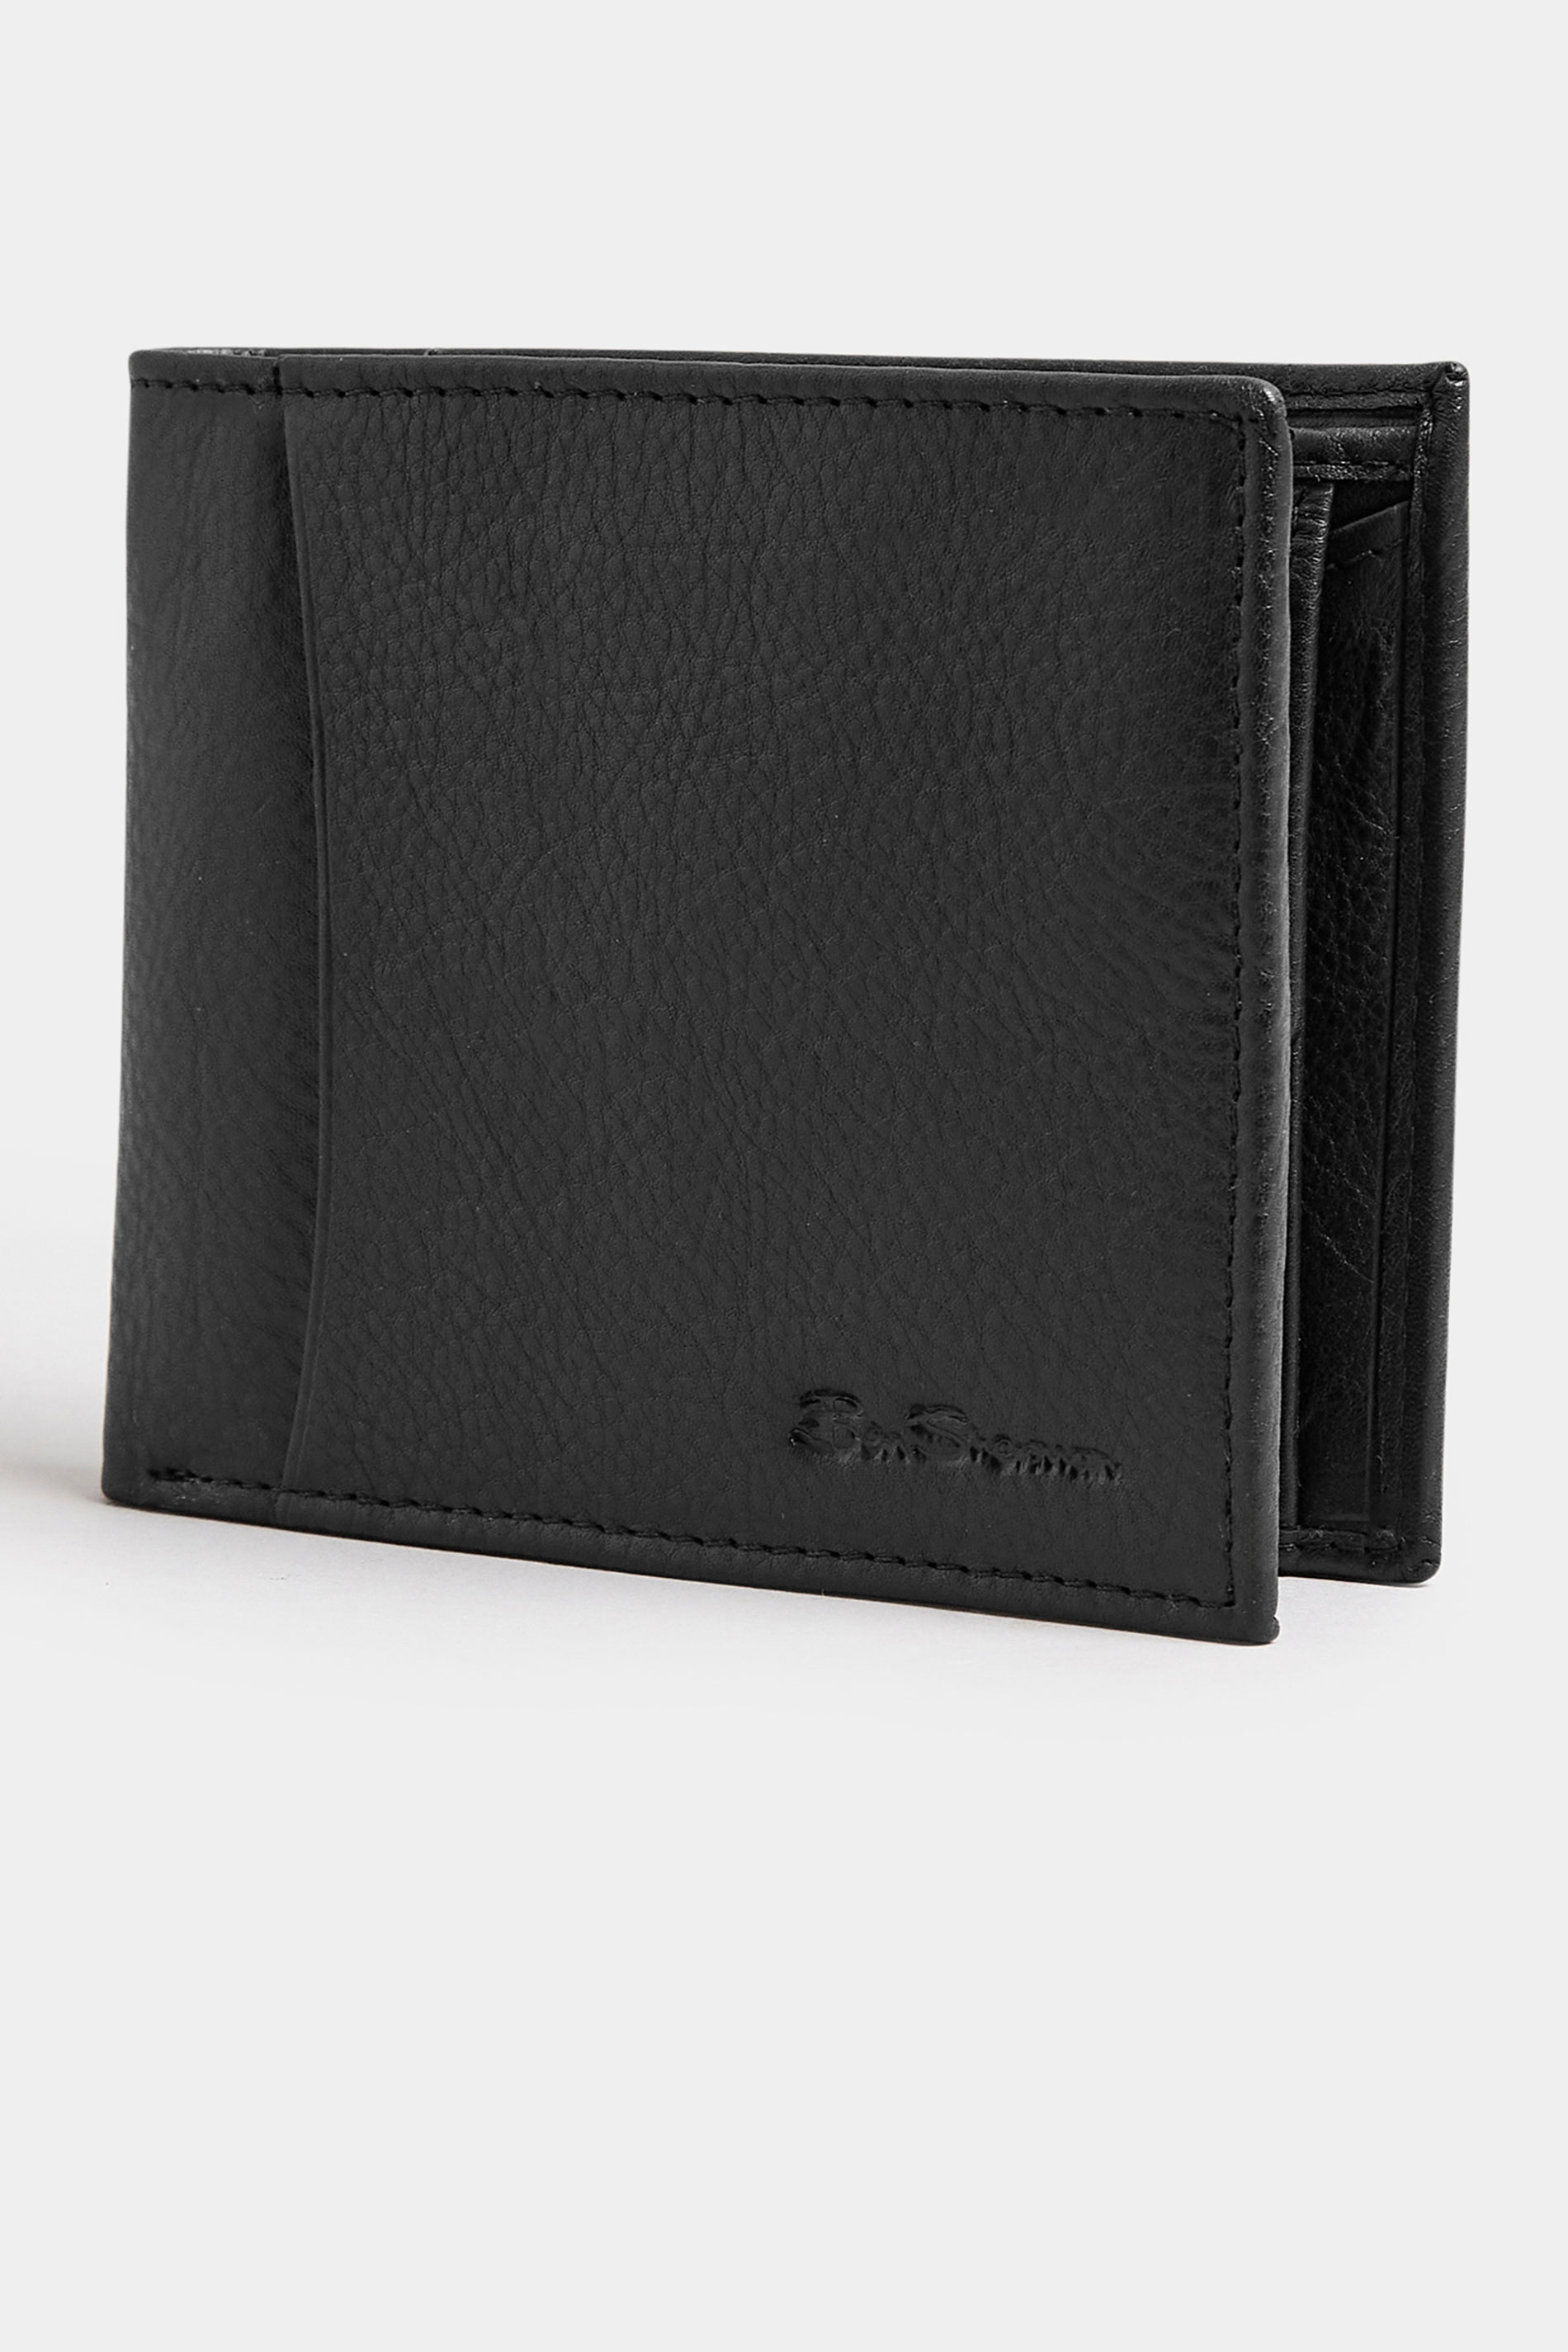 BEN SHERMAN Black Leather Bi-Fold Wallet 1